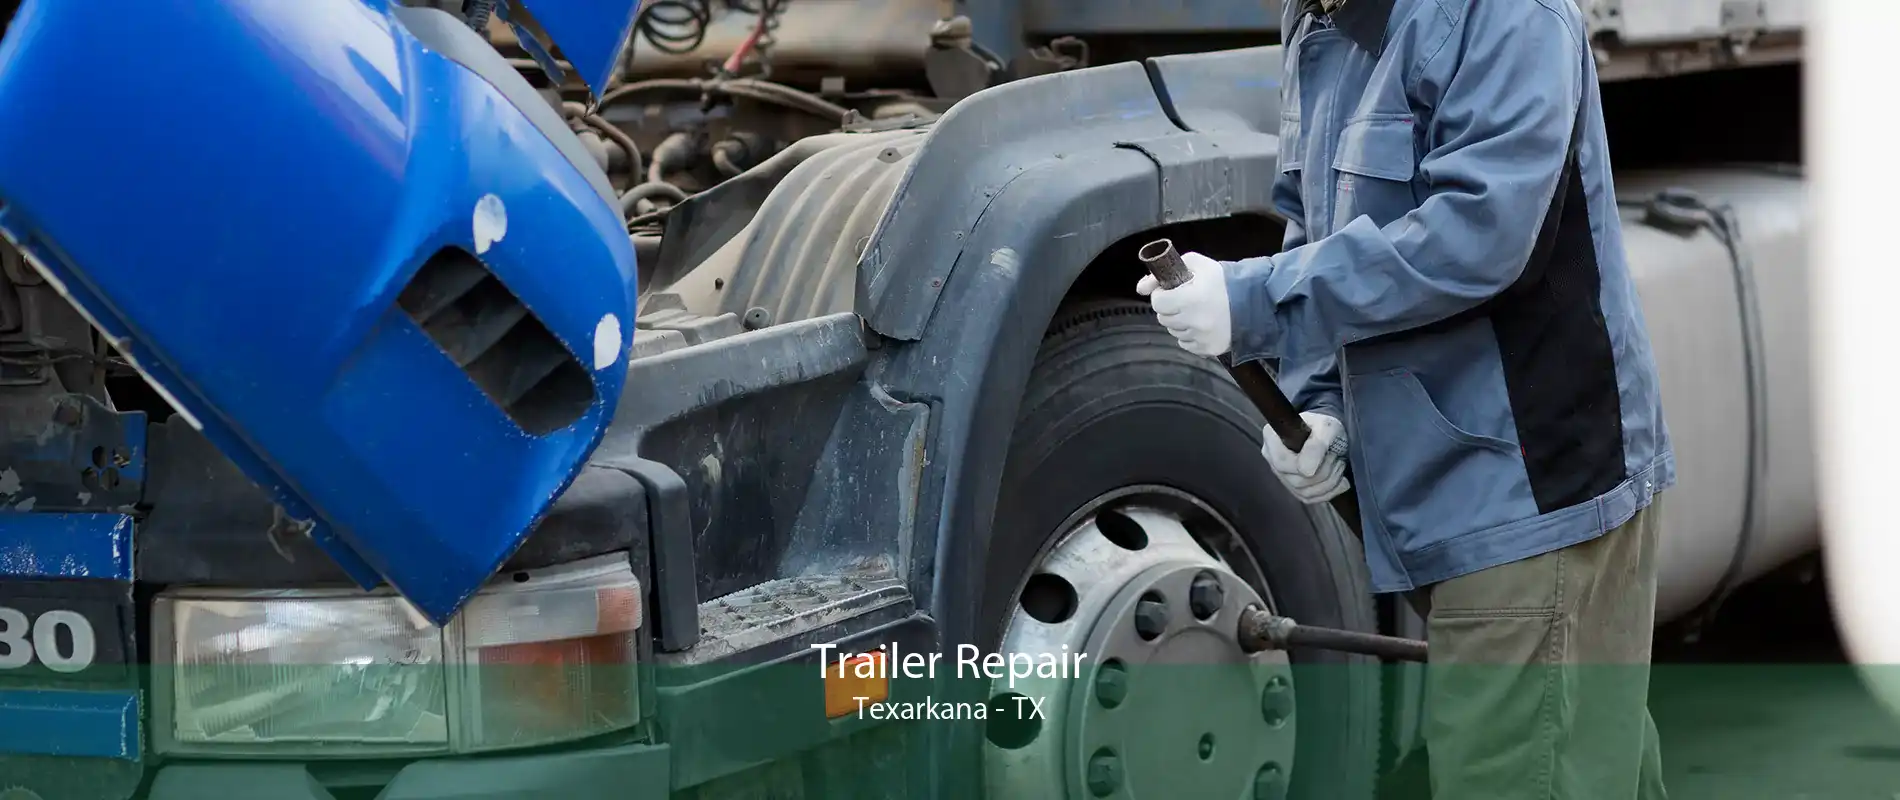 Trailer Repair Texarkana - TX